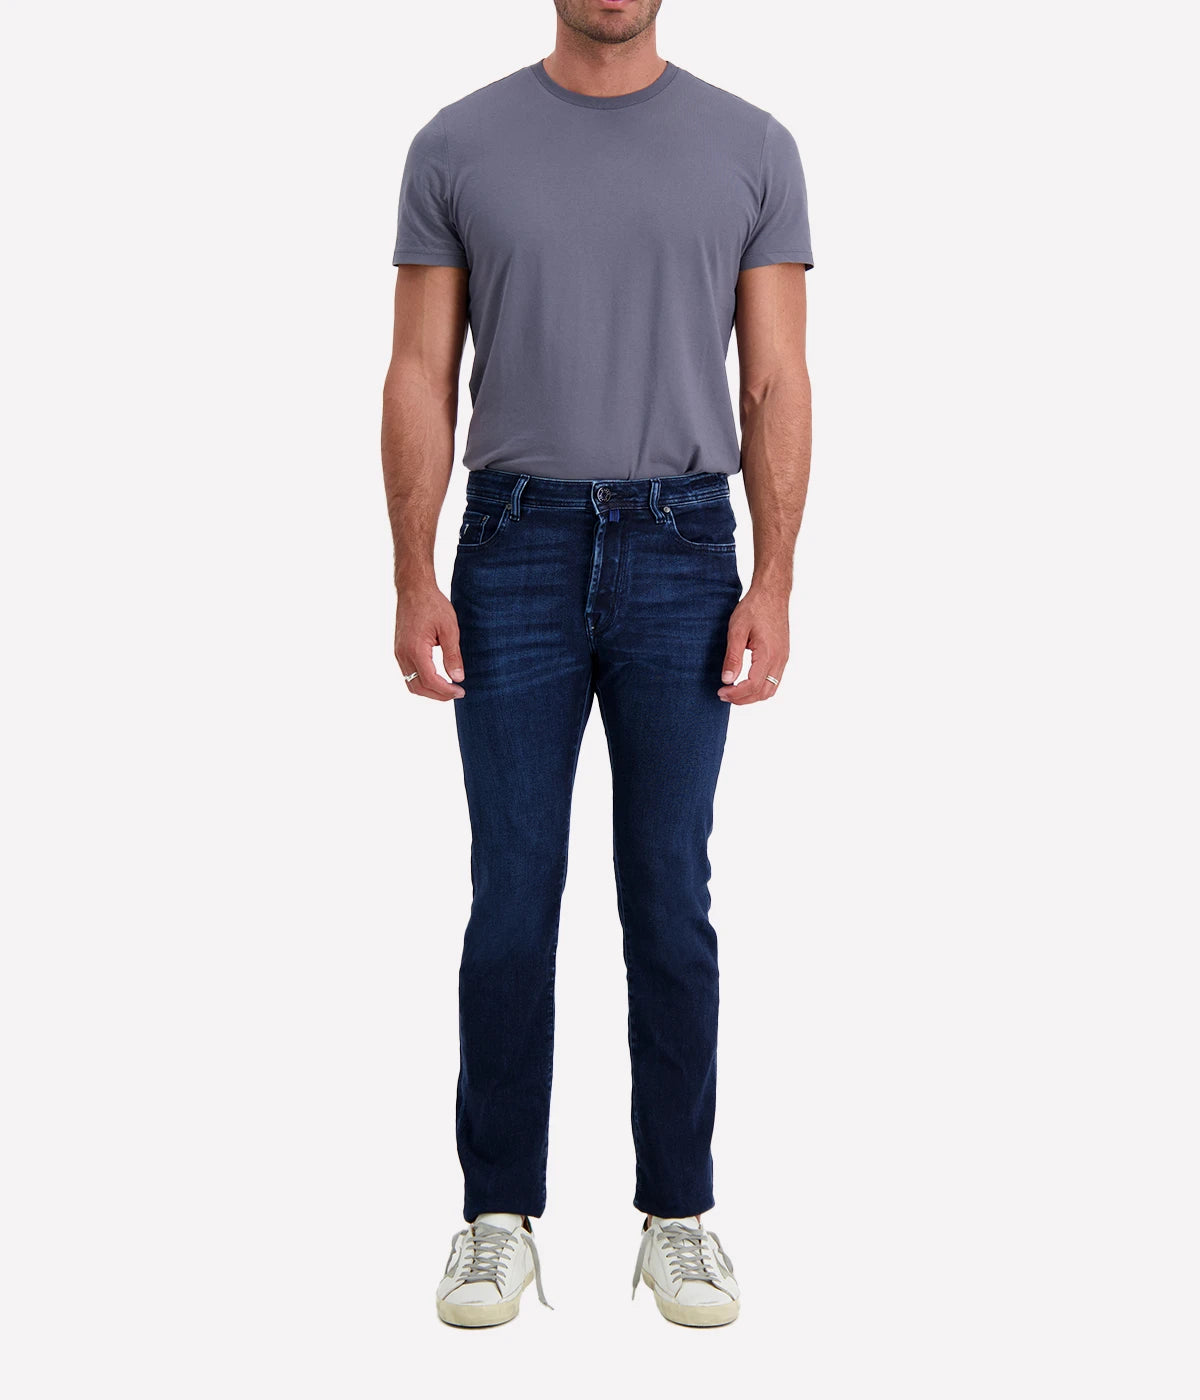 Bard 5 Pocket Slim Fit Jean in Dark Blue Multi Colour